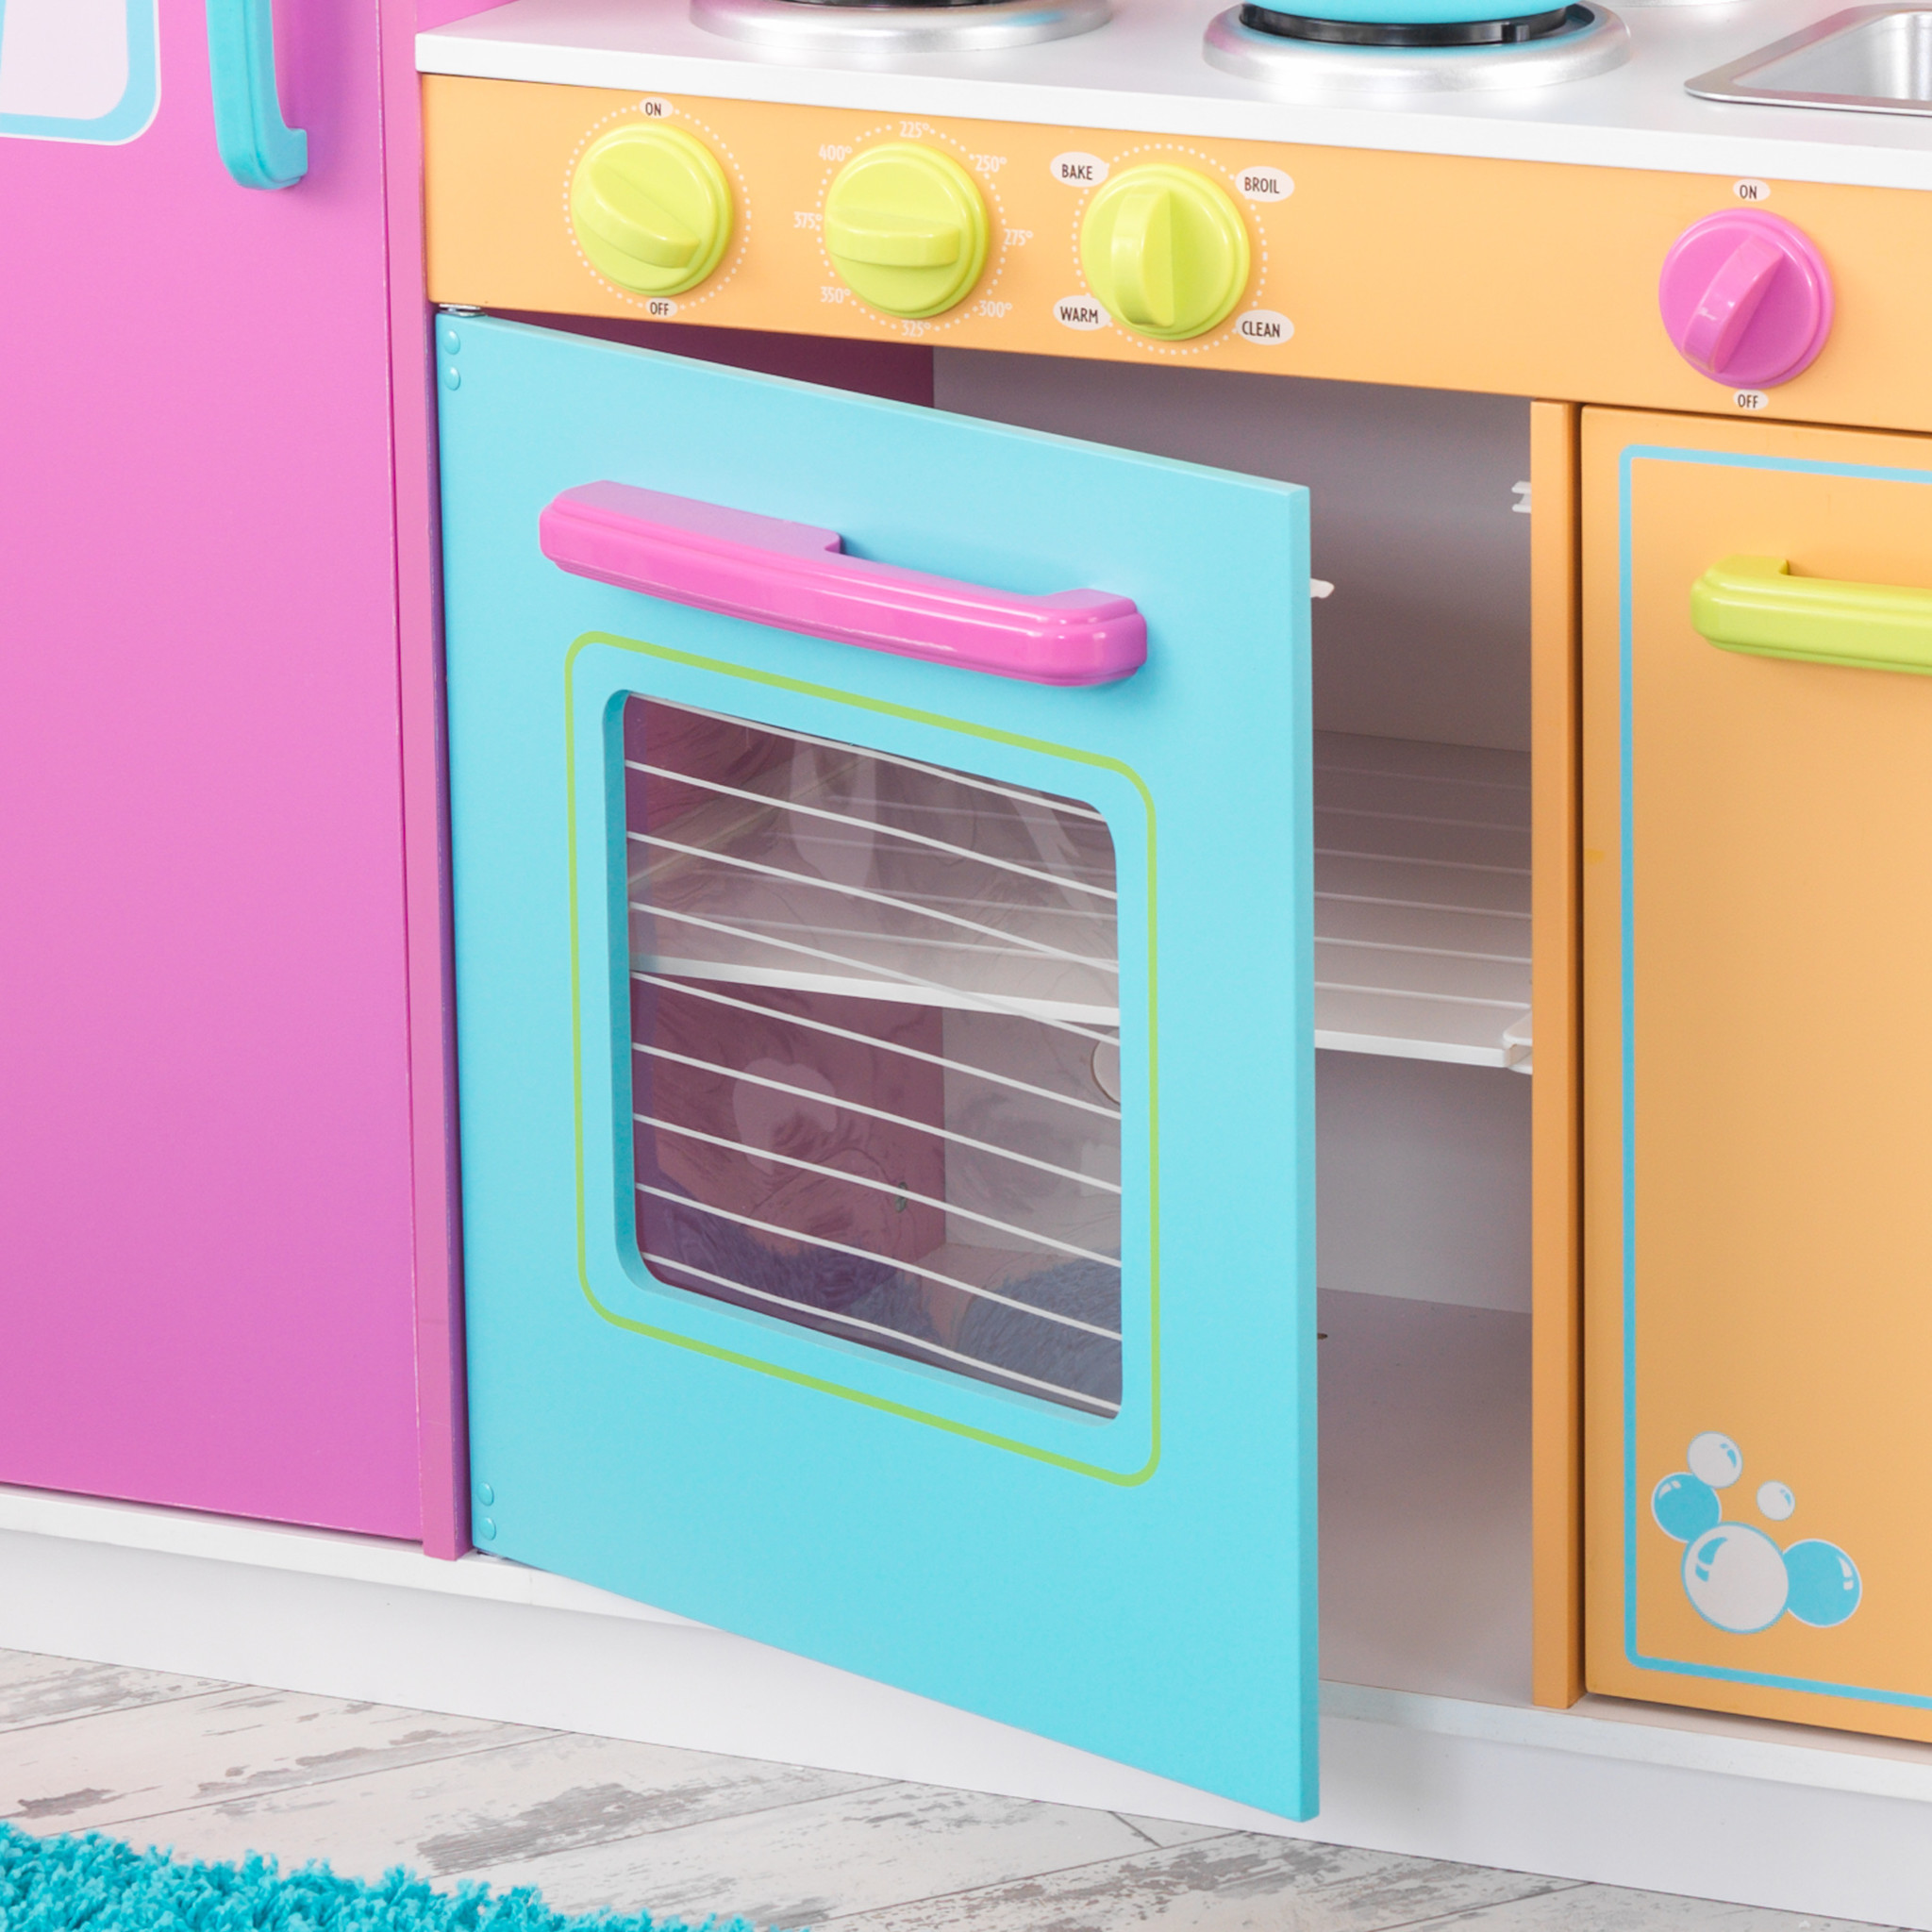 Civiel bijvoeglijk naamwoord Verleiden Speelkeuken meisjes - Luxe meisjes keuken in prachtige kleuren - Kinderspel  ®